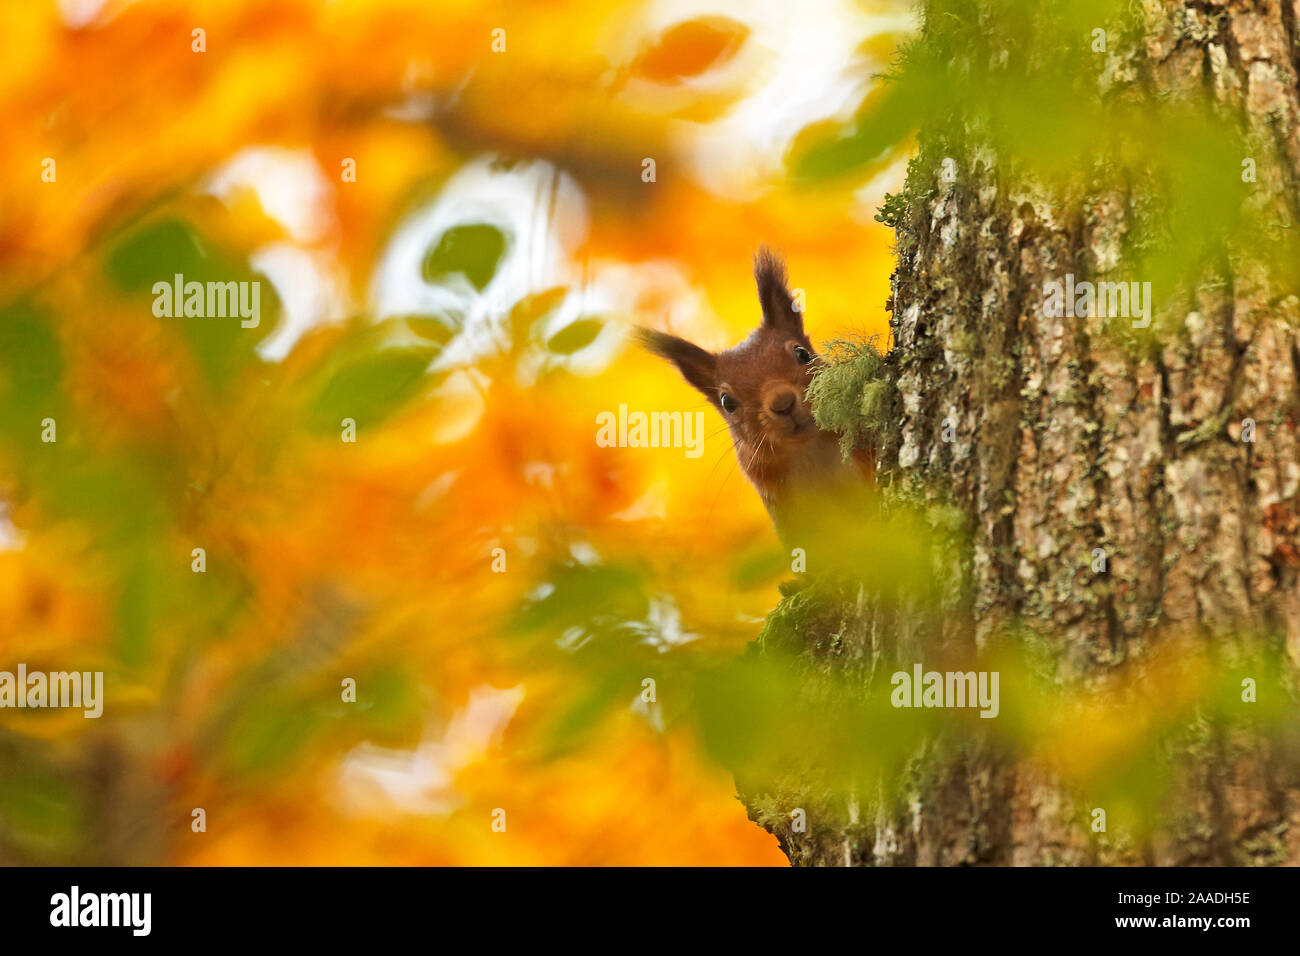 Red scoiattolo (Sciurus vulgaris) salendo tronco di albero con foglie di autunno, Highlands, Scozia, ottobre 2015. Foto Stock